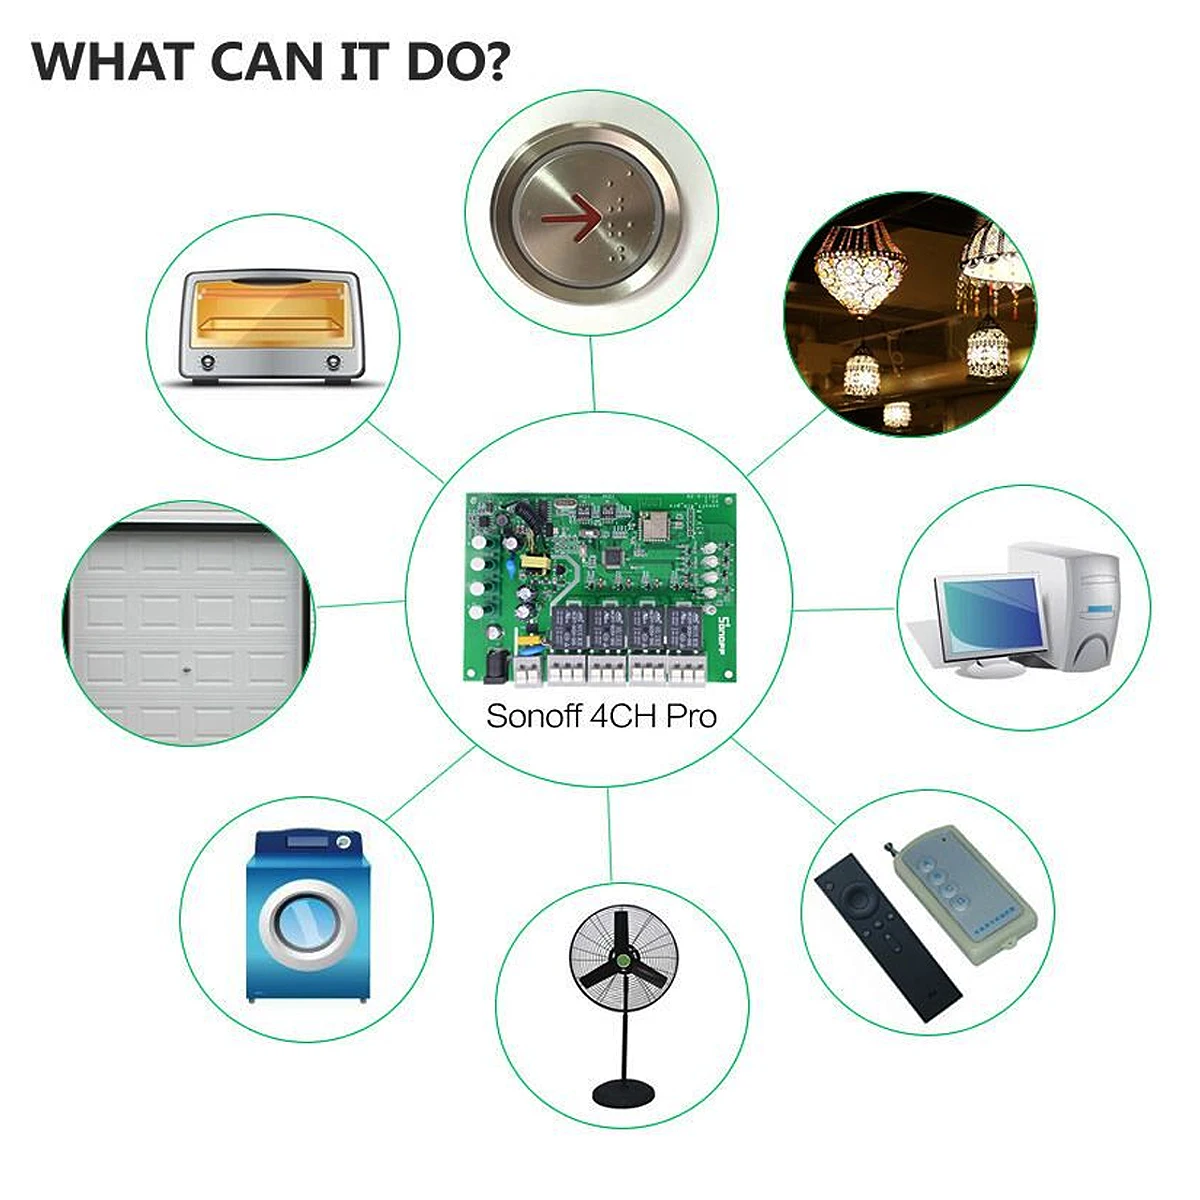 Sonoff 4CH R2 Pro R2 433 МГц банда RF беспроводной пульт дистанционного управления Умный дом Wifi модуль умный переключатель инчинг интерлок реле Alexa Google